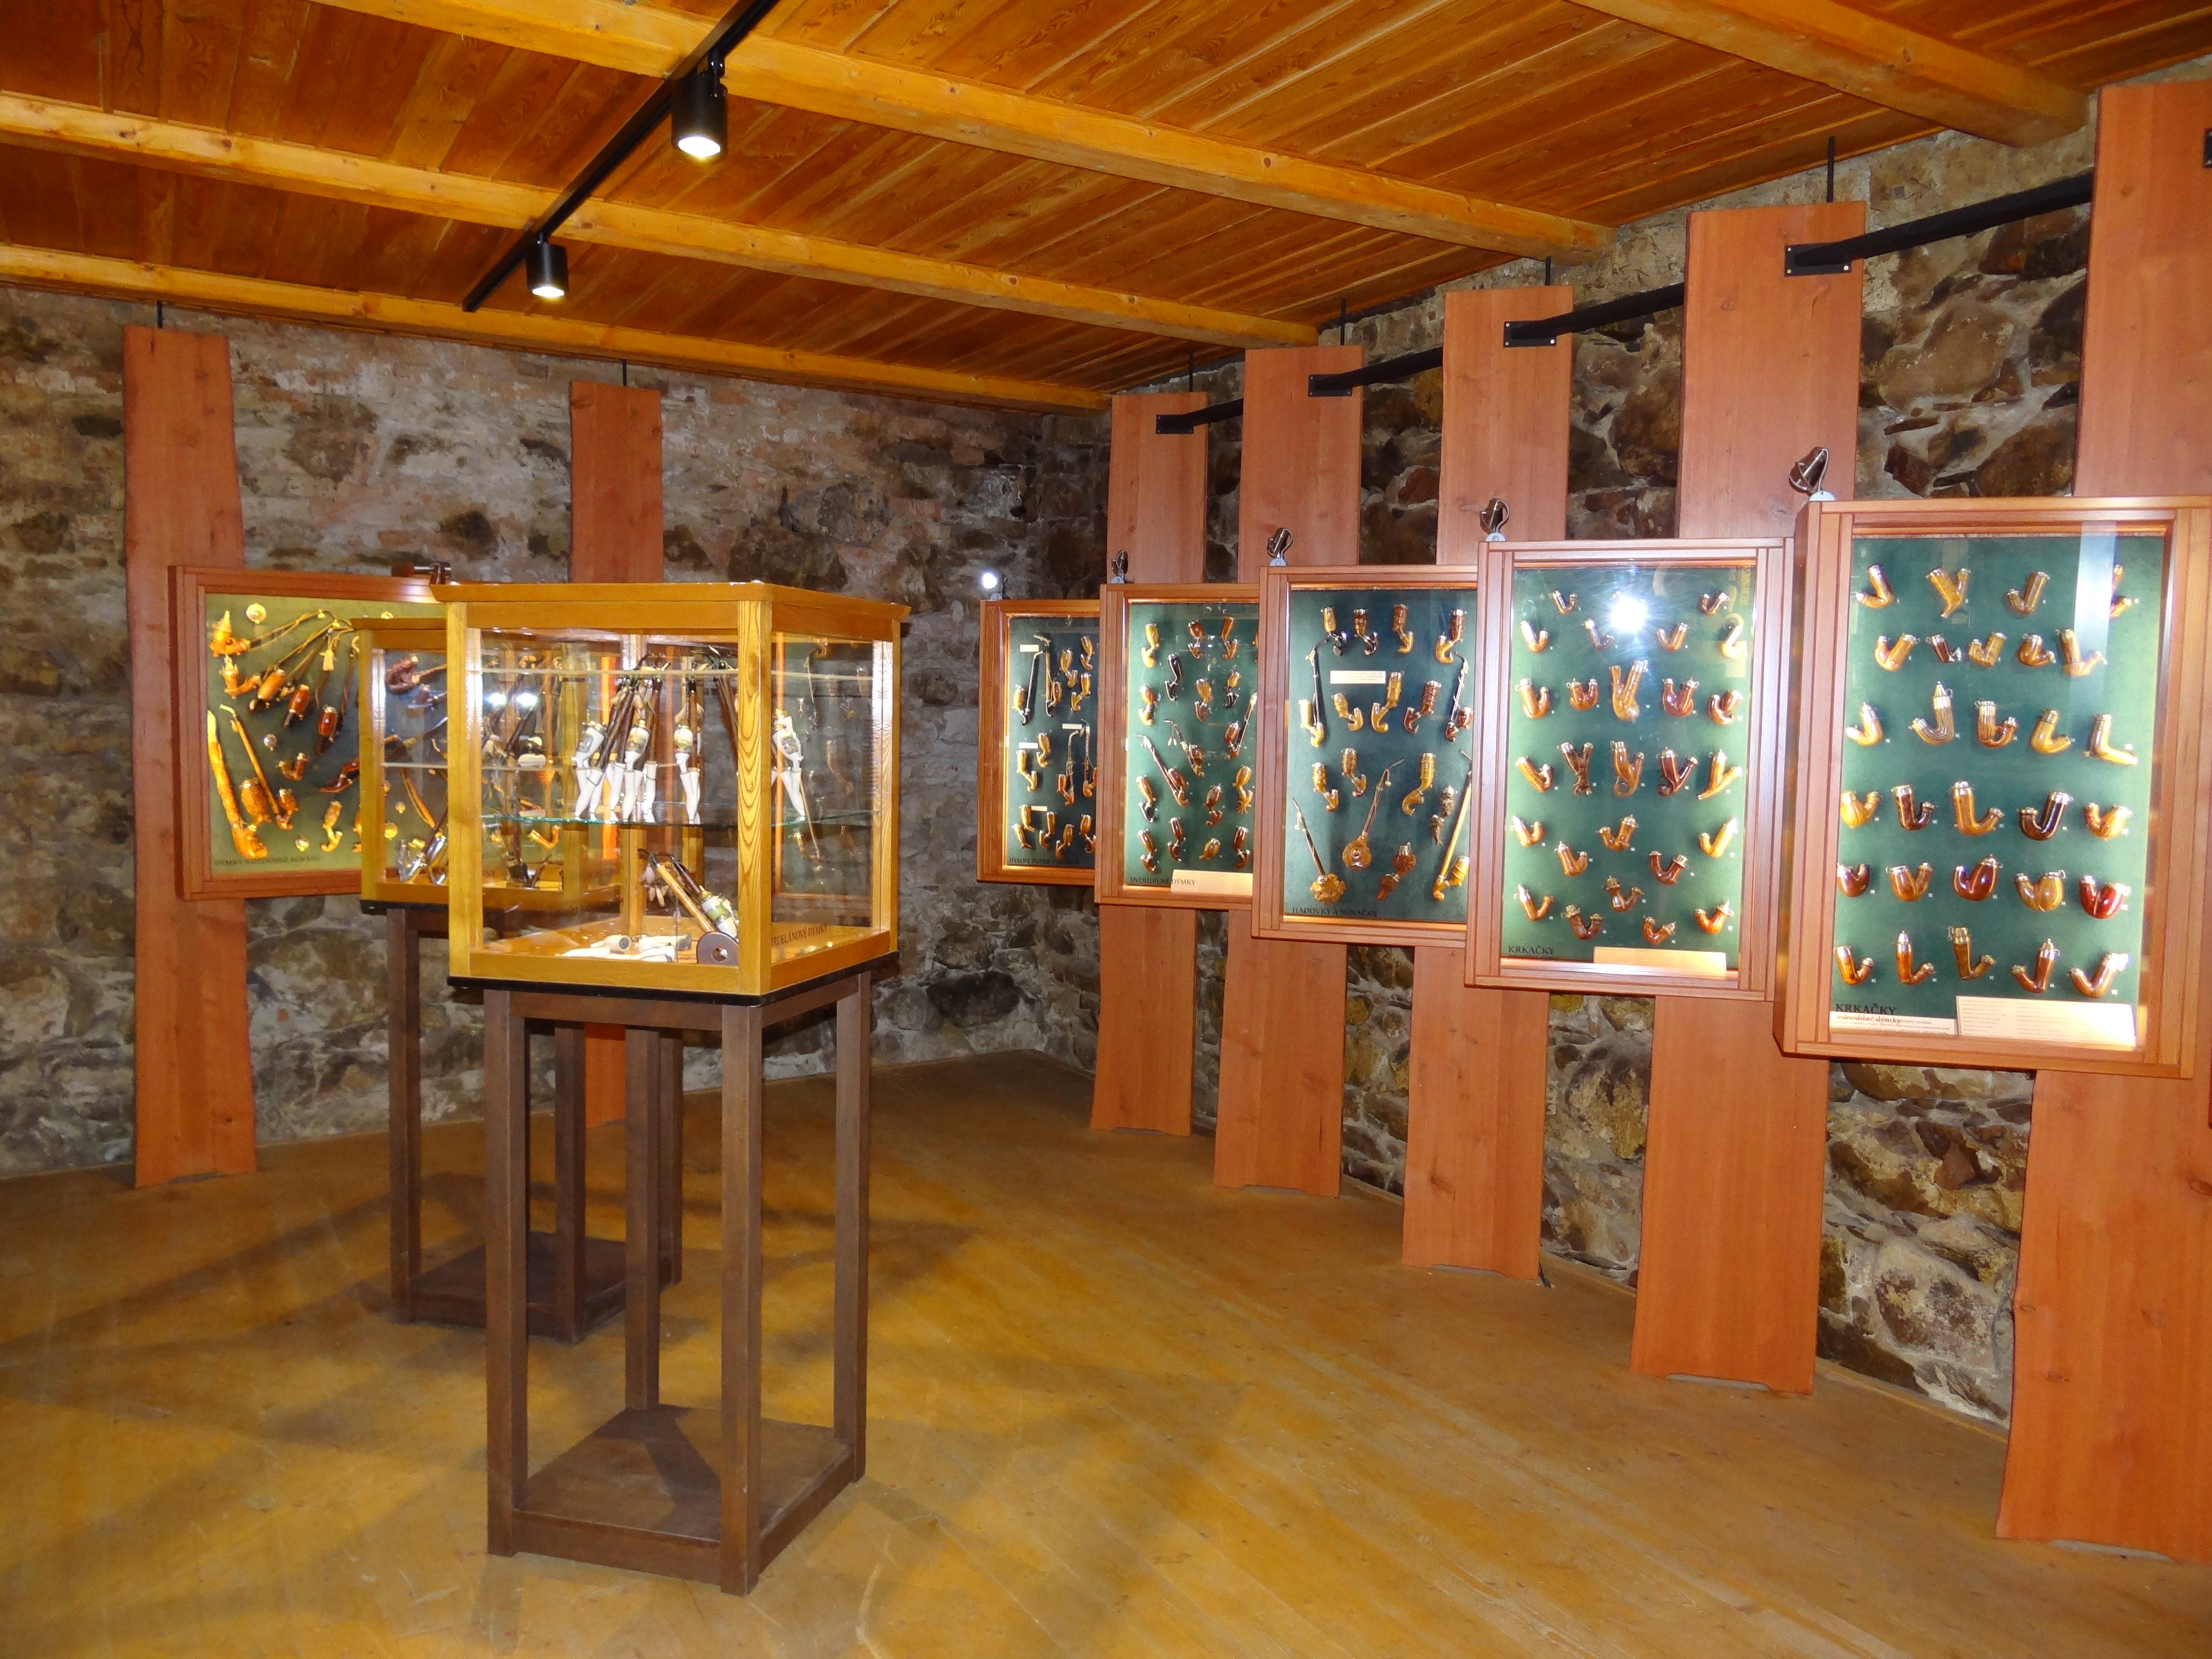 Muzeum dýmek v Proseči